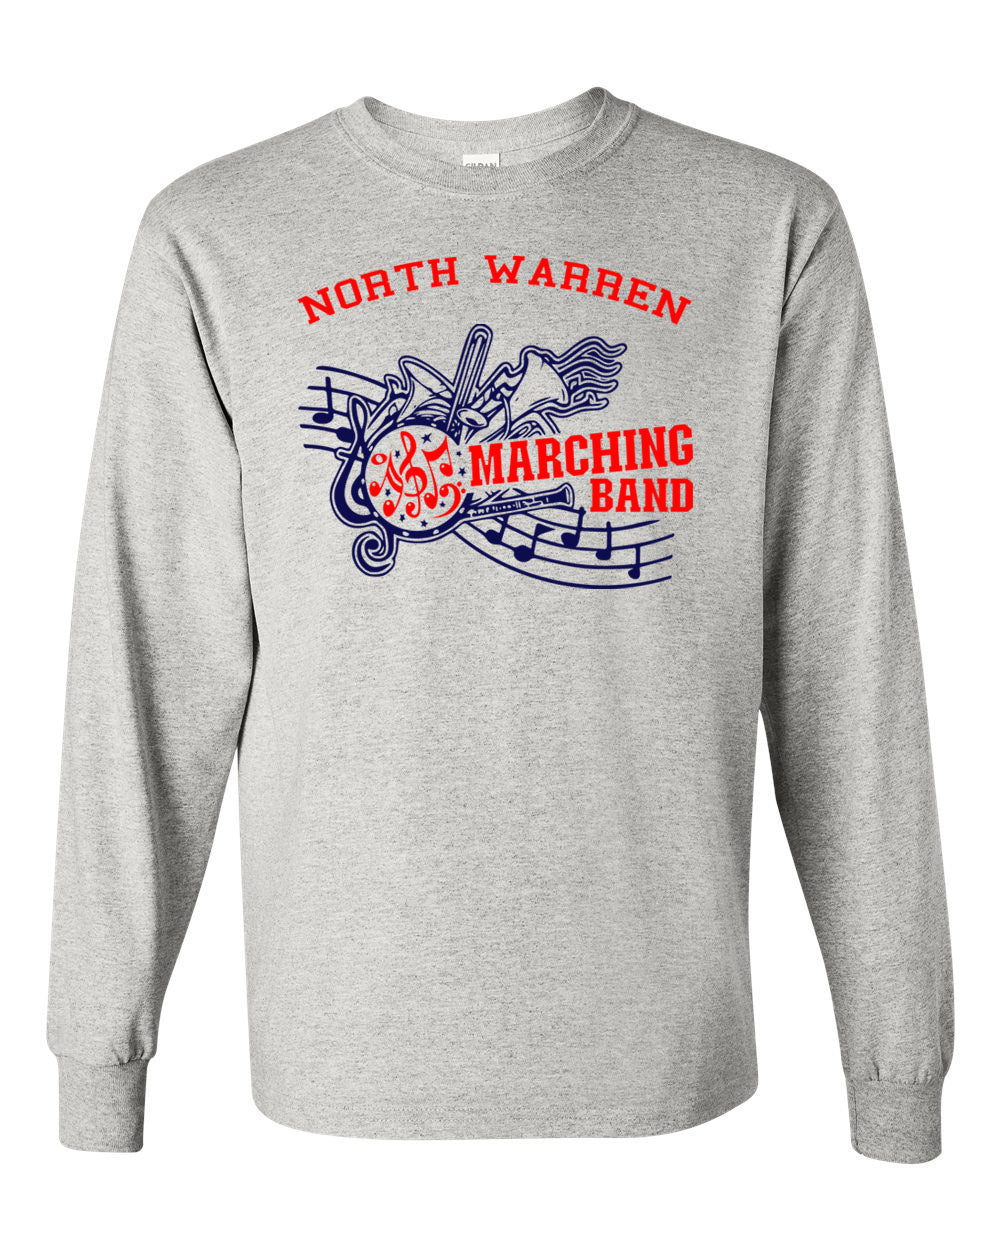 North Warren Band Design 1 Long Sleeve Shirt